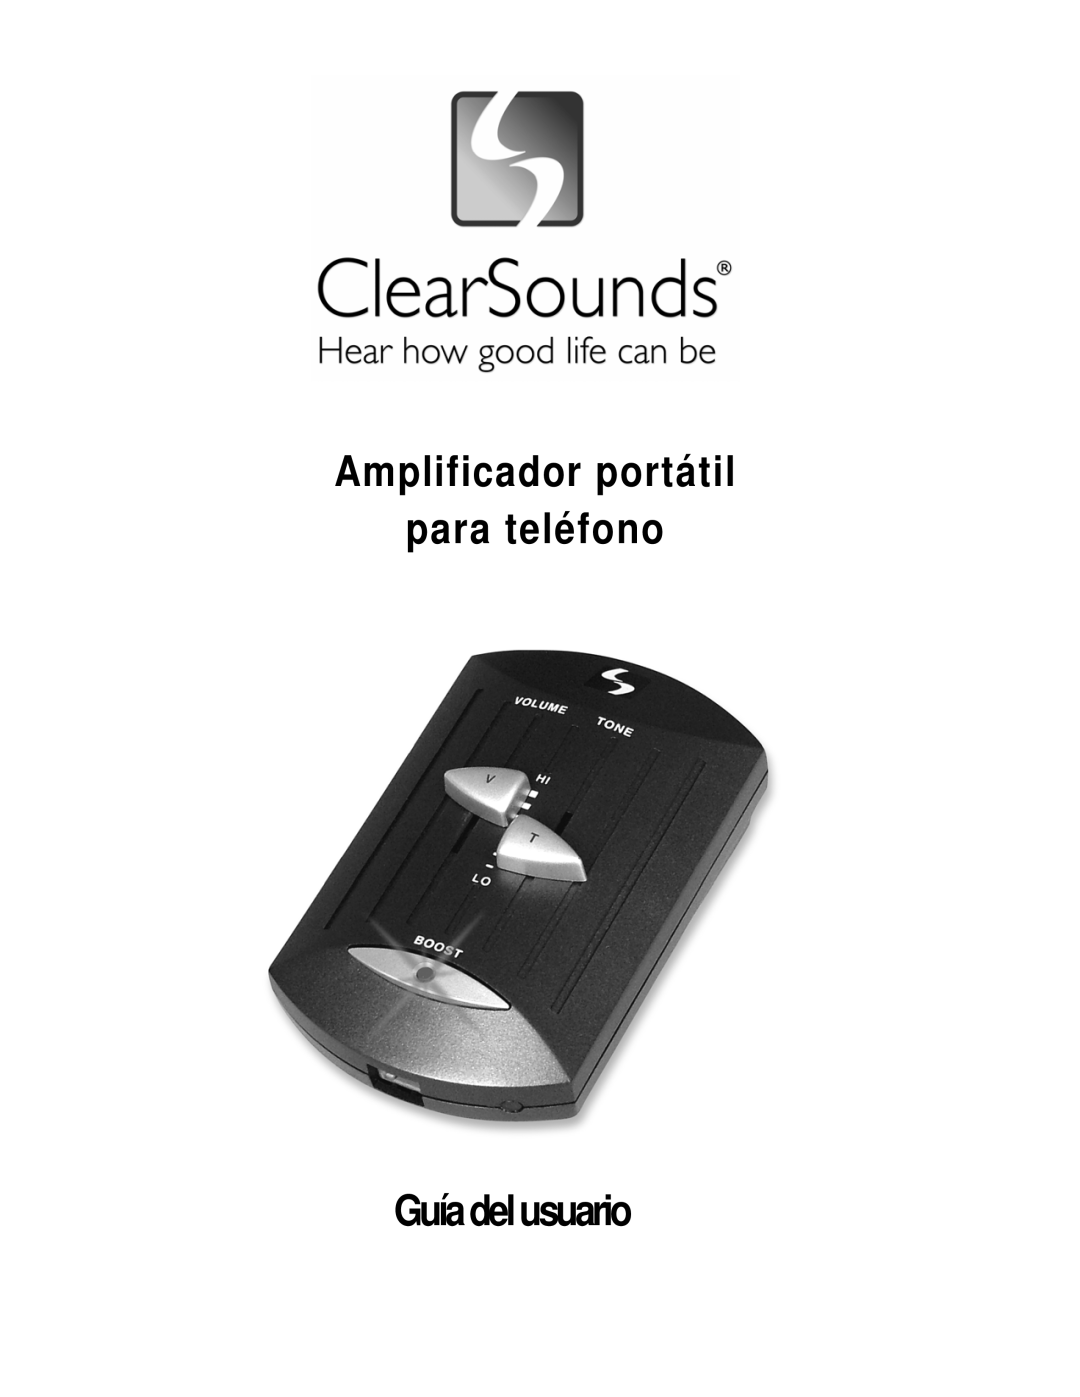 ClearSounds IL40 manual Amplificador portátil para teléfono, Guíadelusuario 